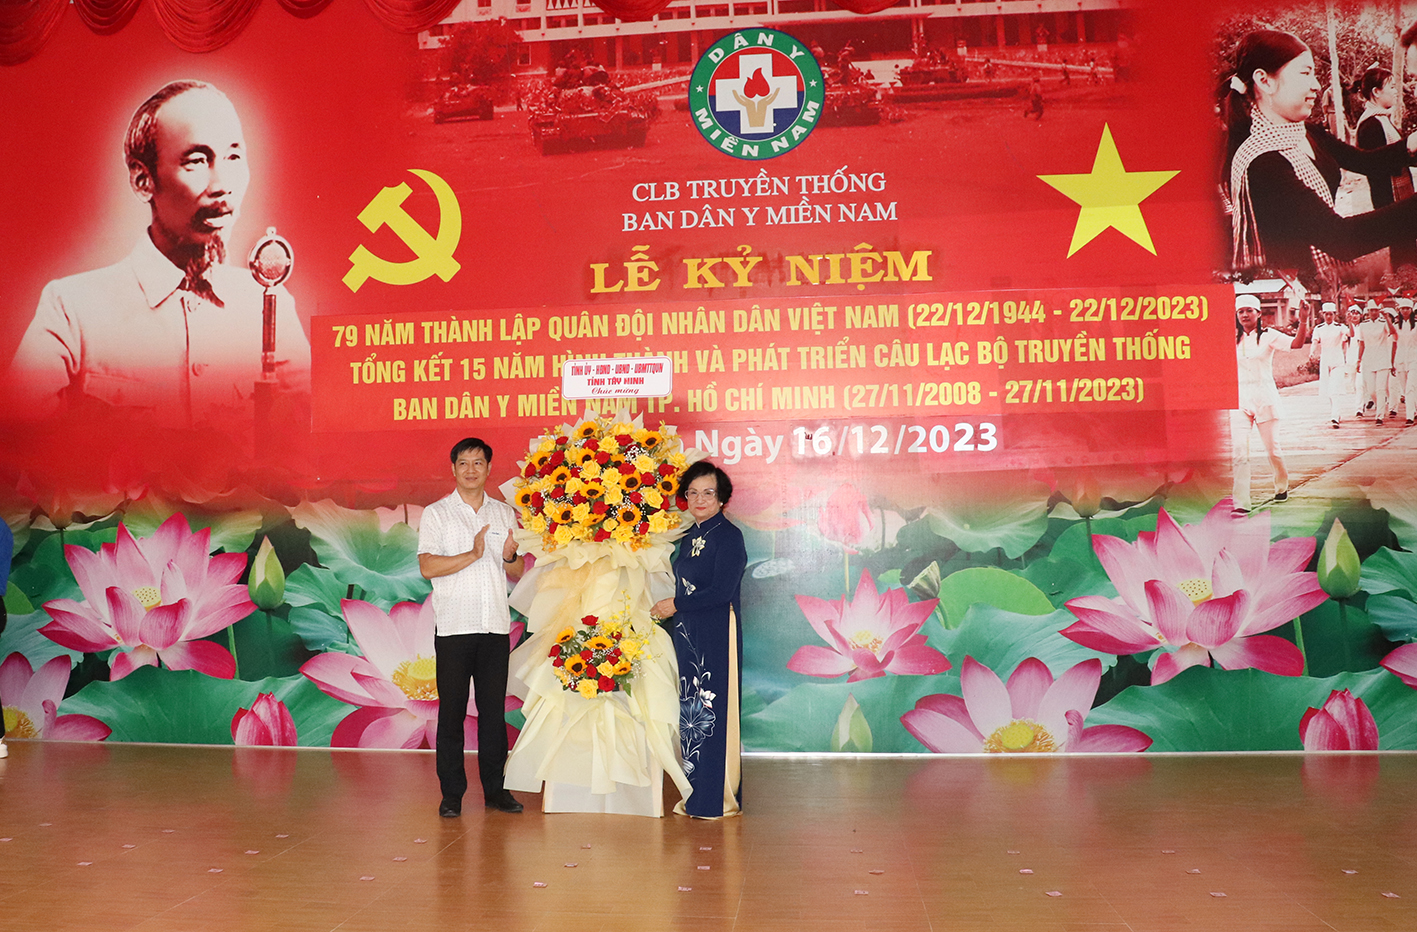 Bí thư Tỉnh uỷ, Chủ tịch HĐND tỉnh Tây Ninh Nguyễn Thành Tâm tặng hoa chúc mừng buổi họp mặt.